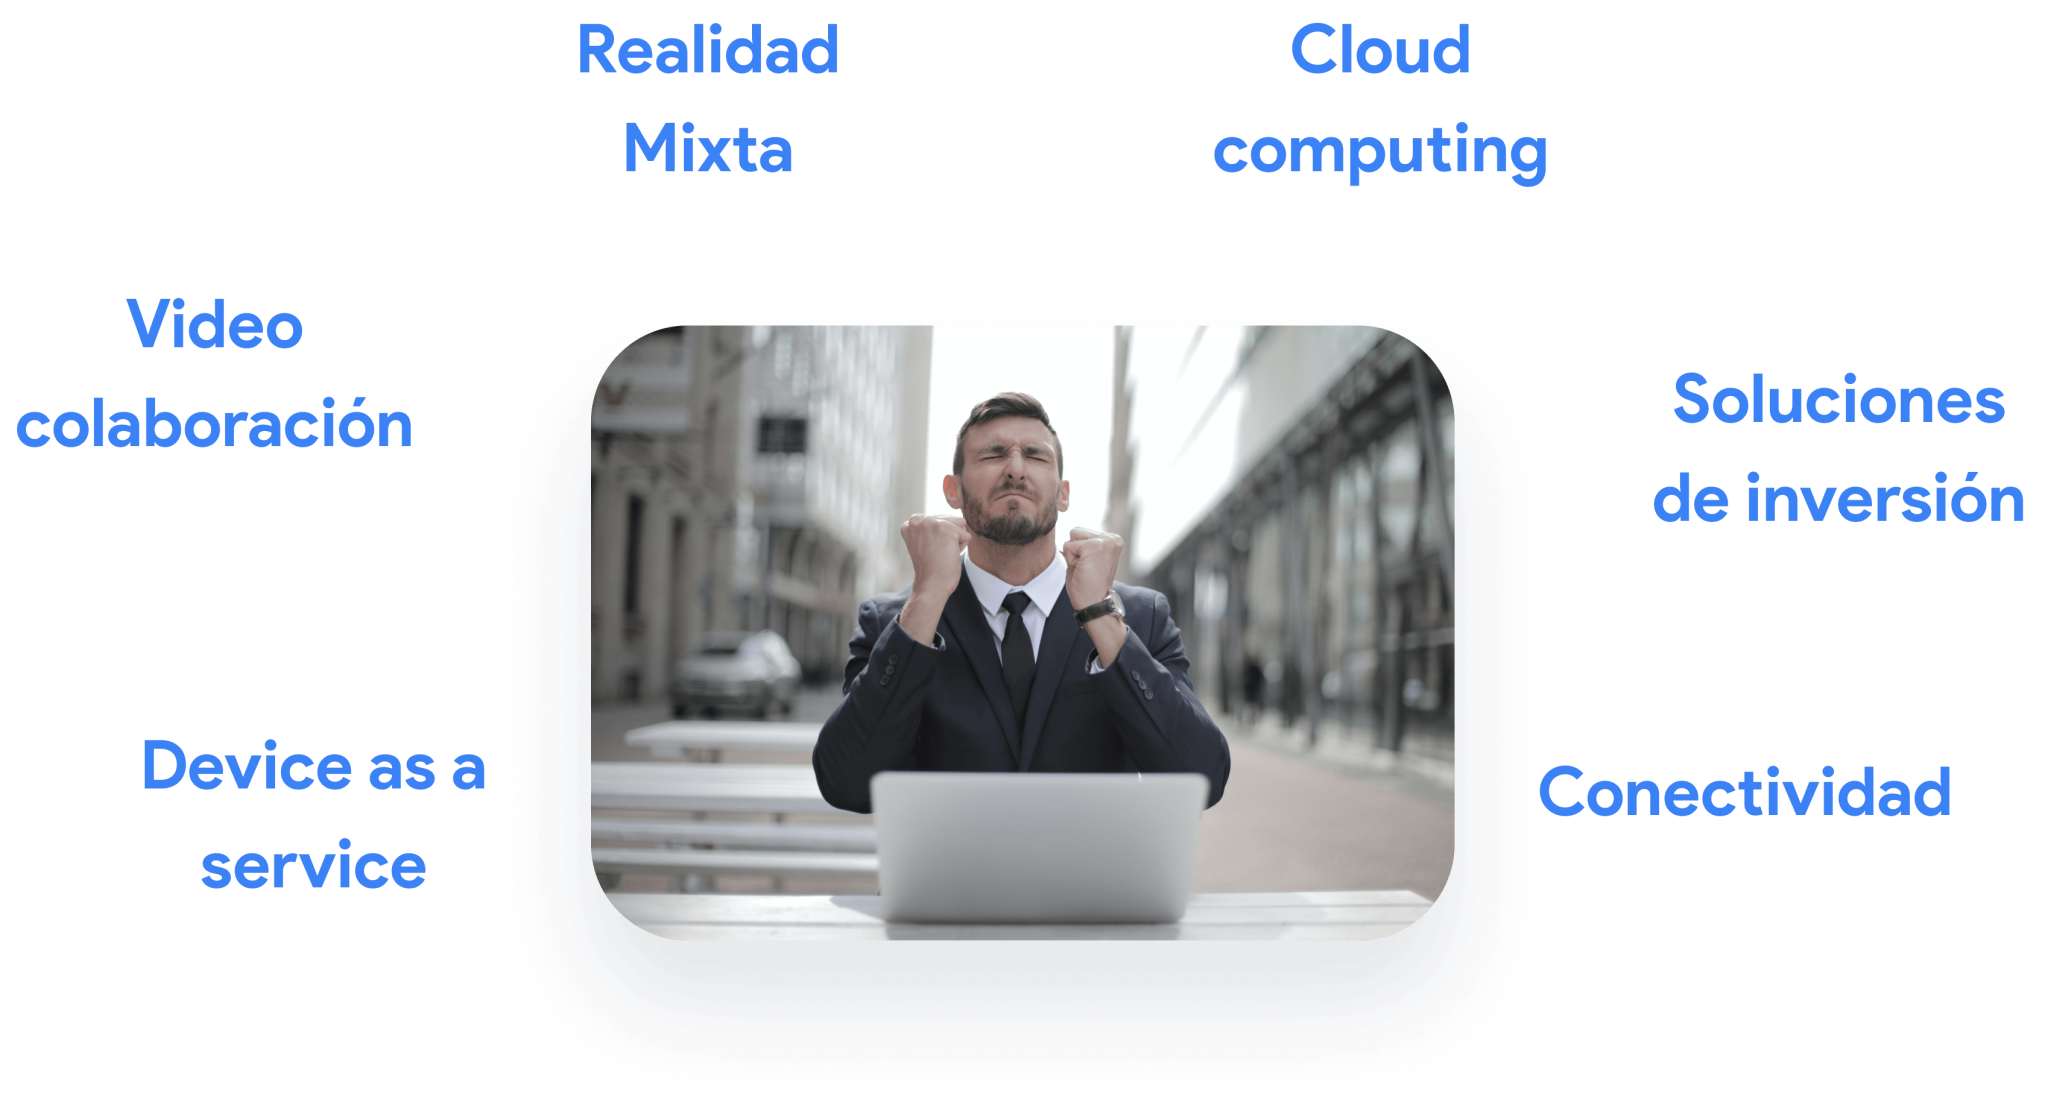 Device as a service, Video colaboración, Realidad mixta, Cloud computing, Soluciones de inversión, Conectividad.